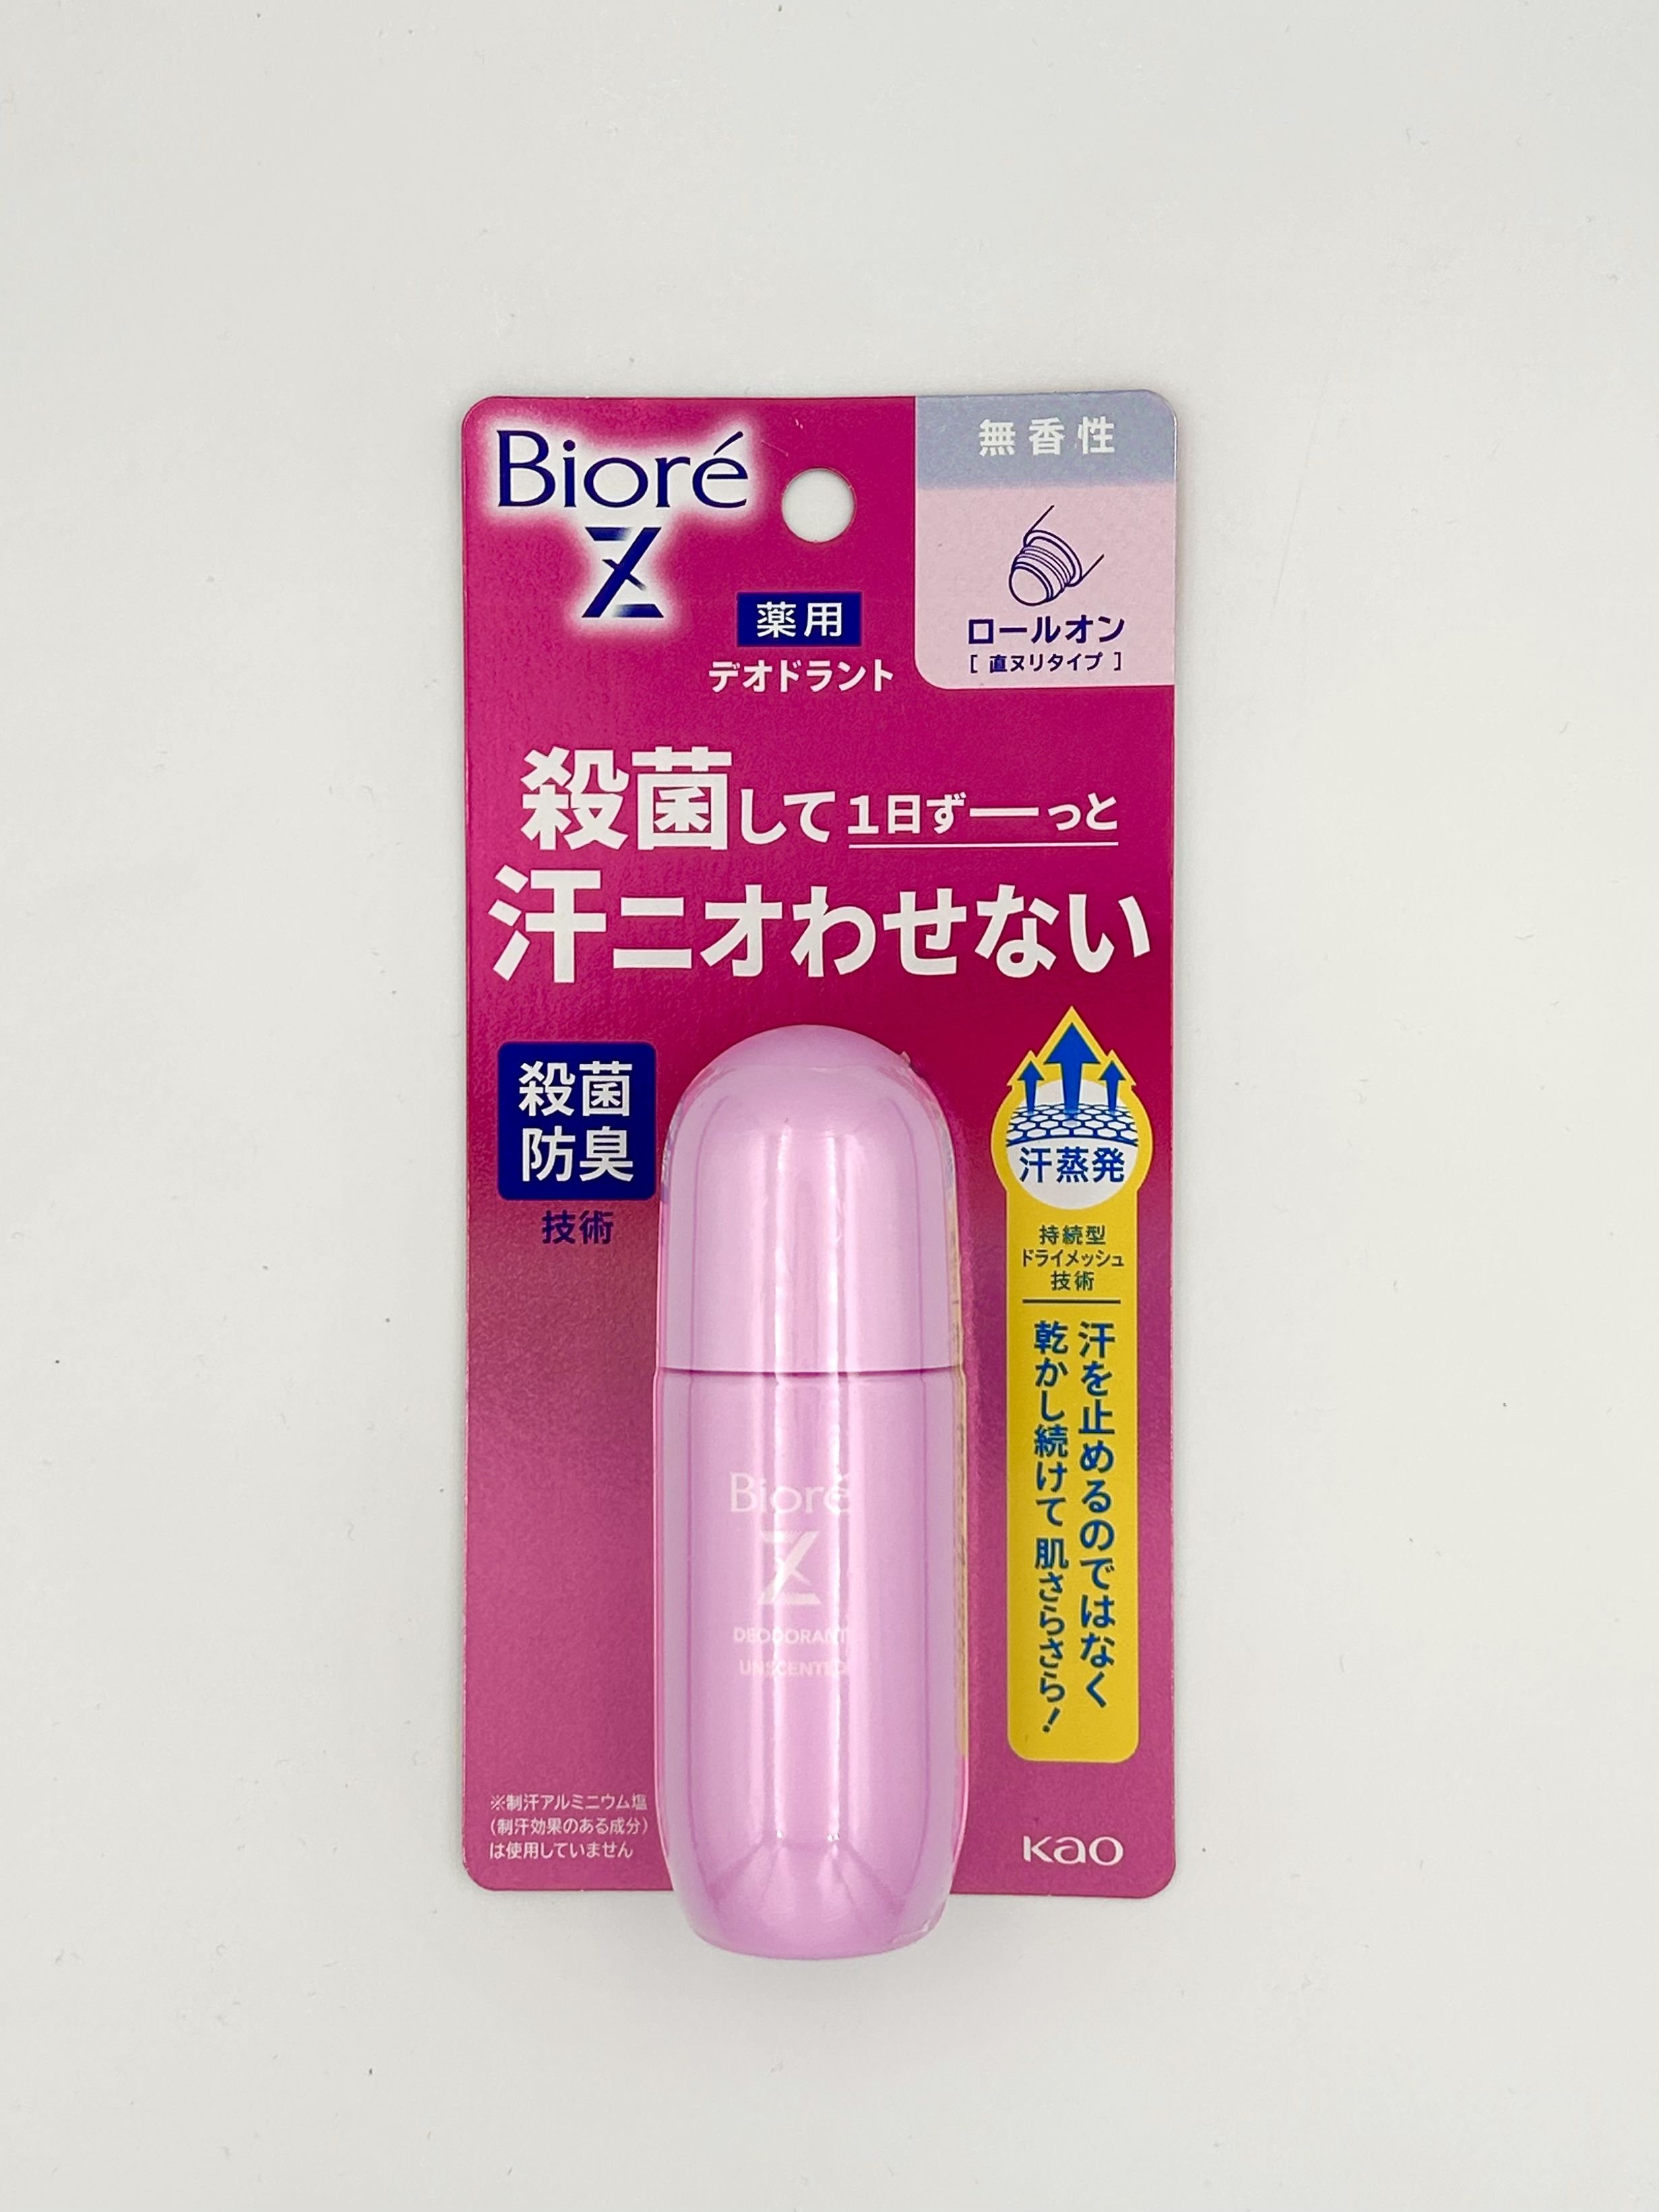 Kao Biore Deodorant Z Роликовый дезодорант-антиперсперспирант с антибактериальным эффектом без отдушек 40 мл